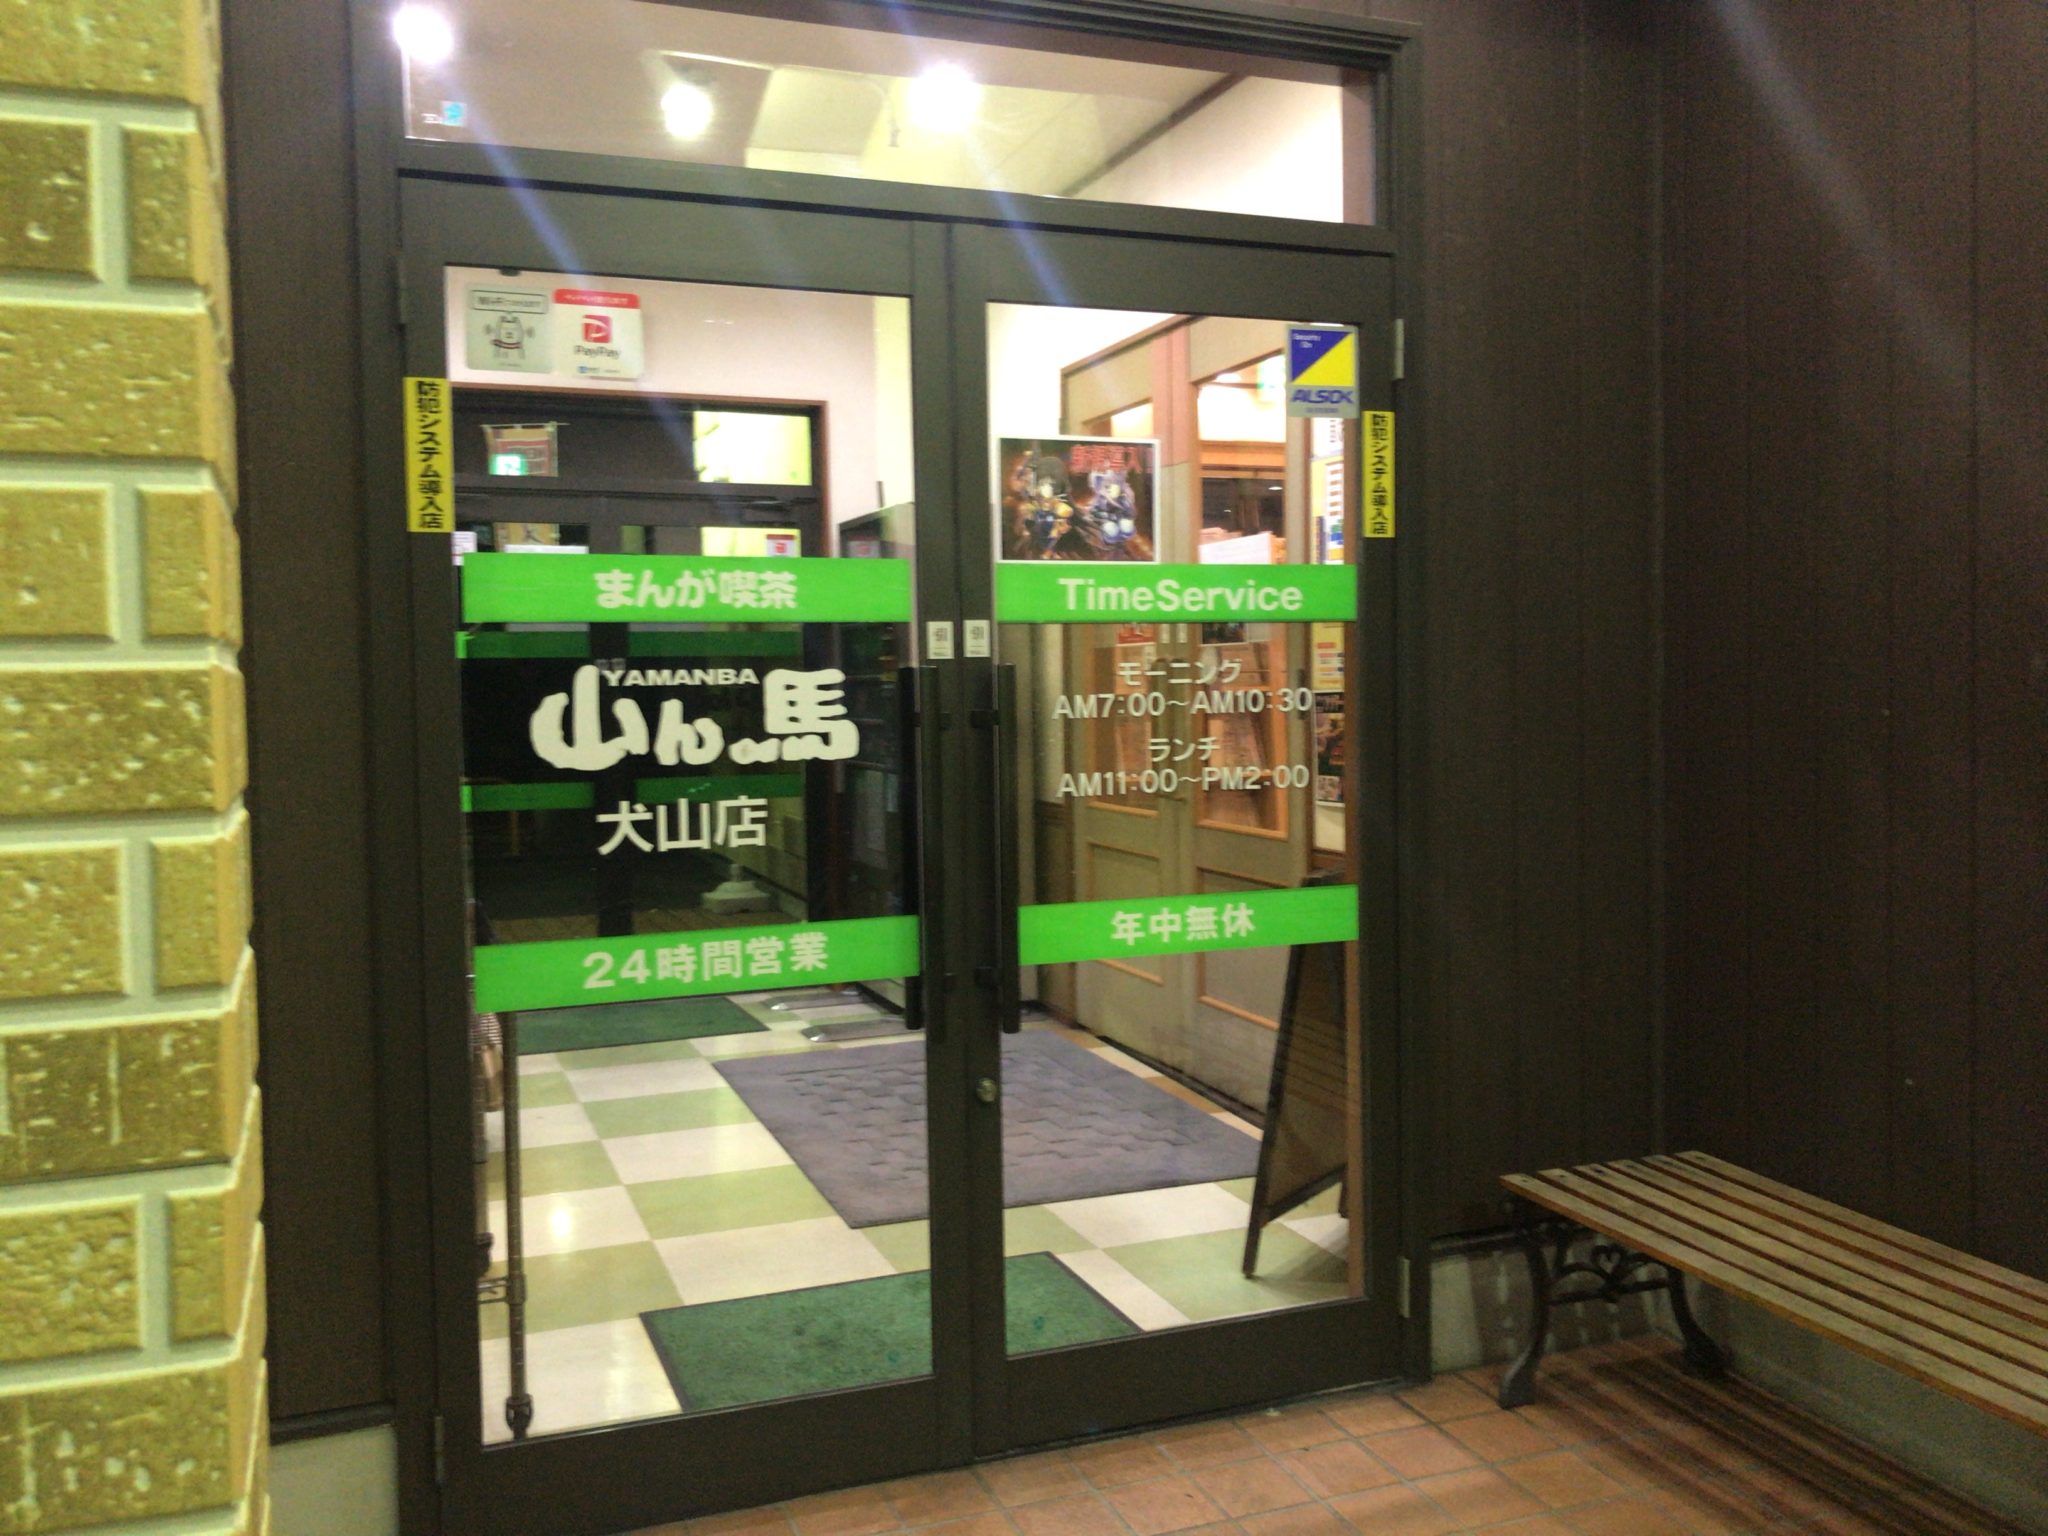 犬山駅から徒歩5分 まんが喫茶山ん馬 犬山店をレポート 日本全国のネカフェ 漫画喫茶マップのヒマップ